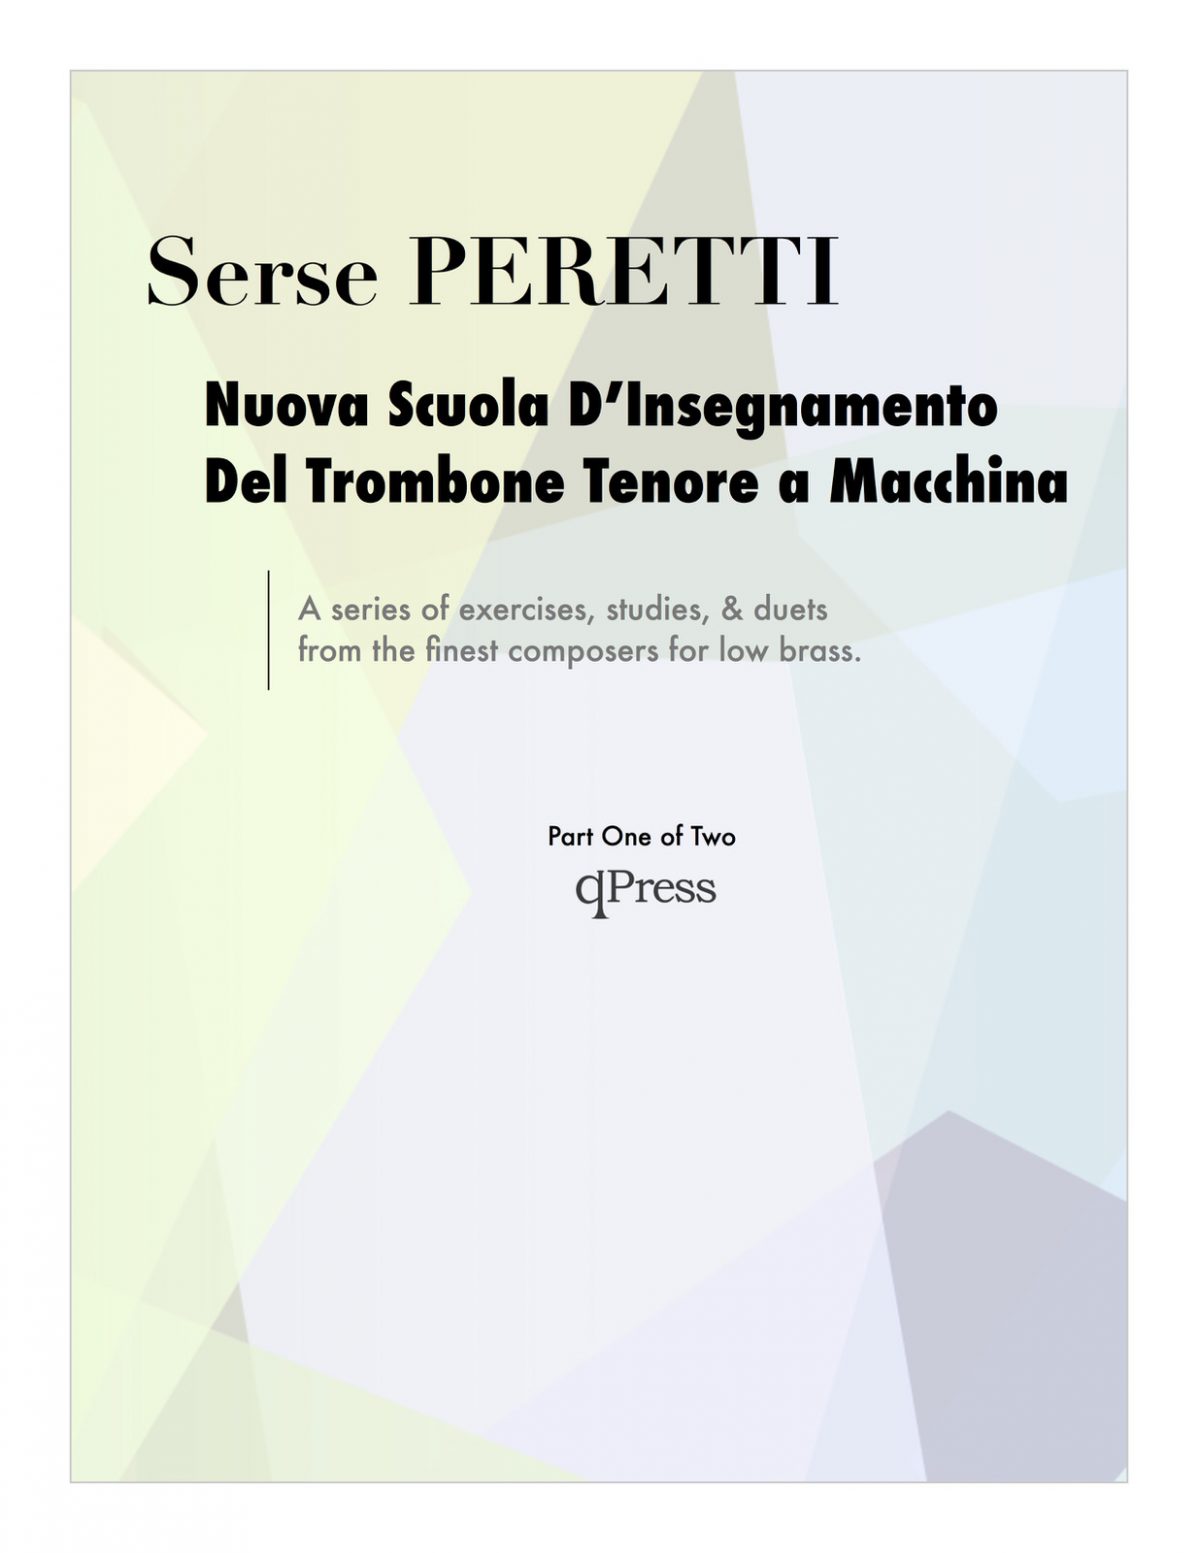 Peretti, Nuova Scuola D'Insegnamento Part 1-p001